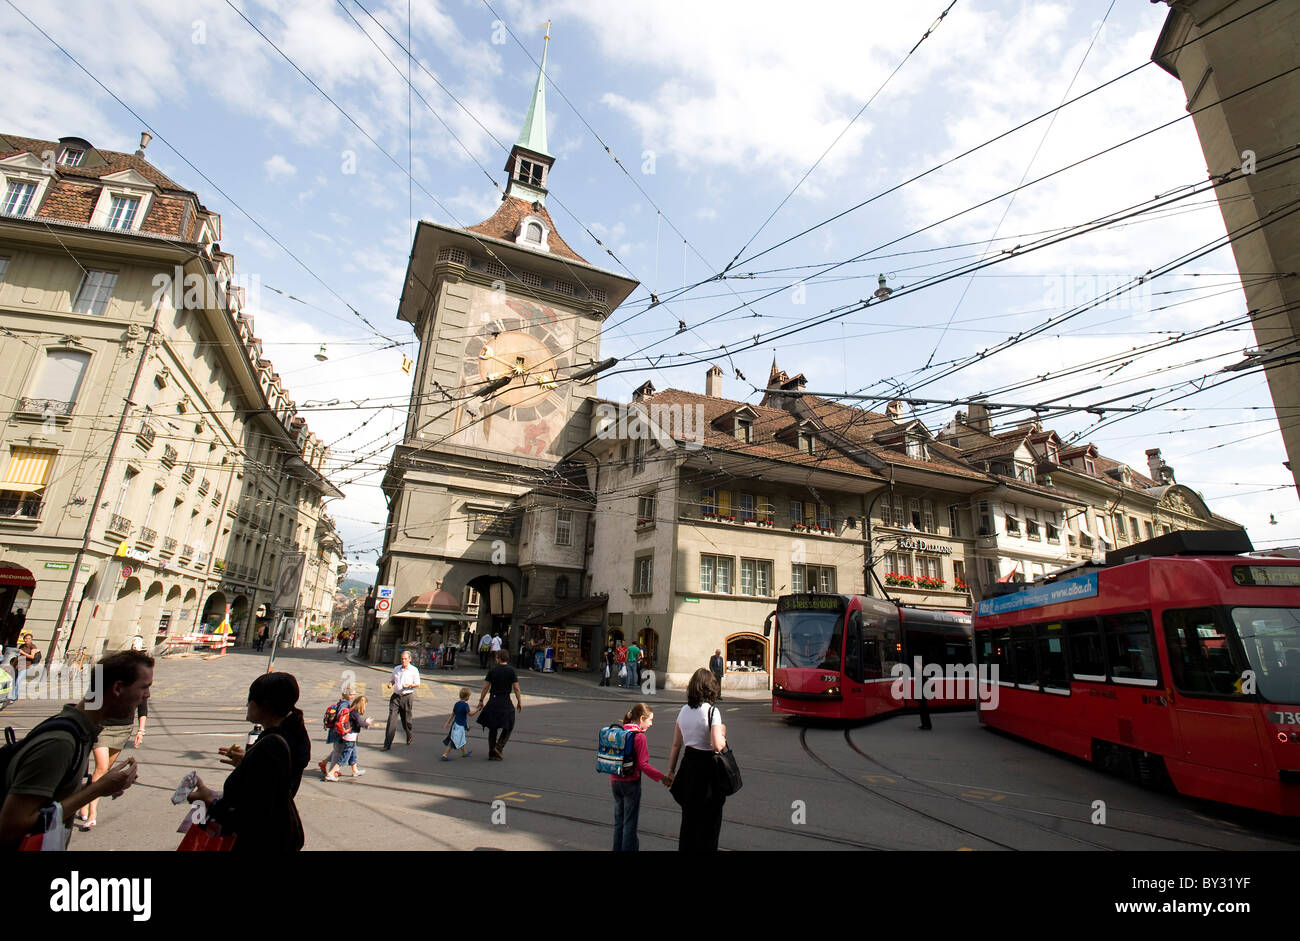 La tour de l'horloge de la vieille ville, Berne, Suisse Banque D'Images